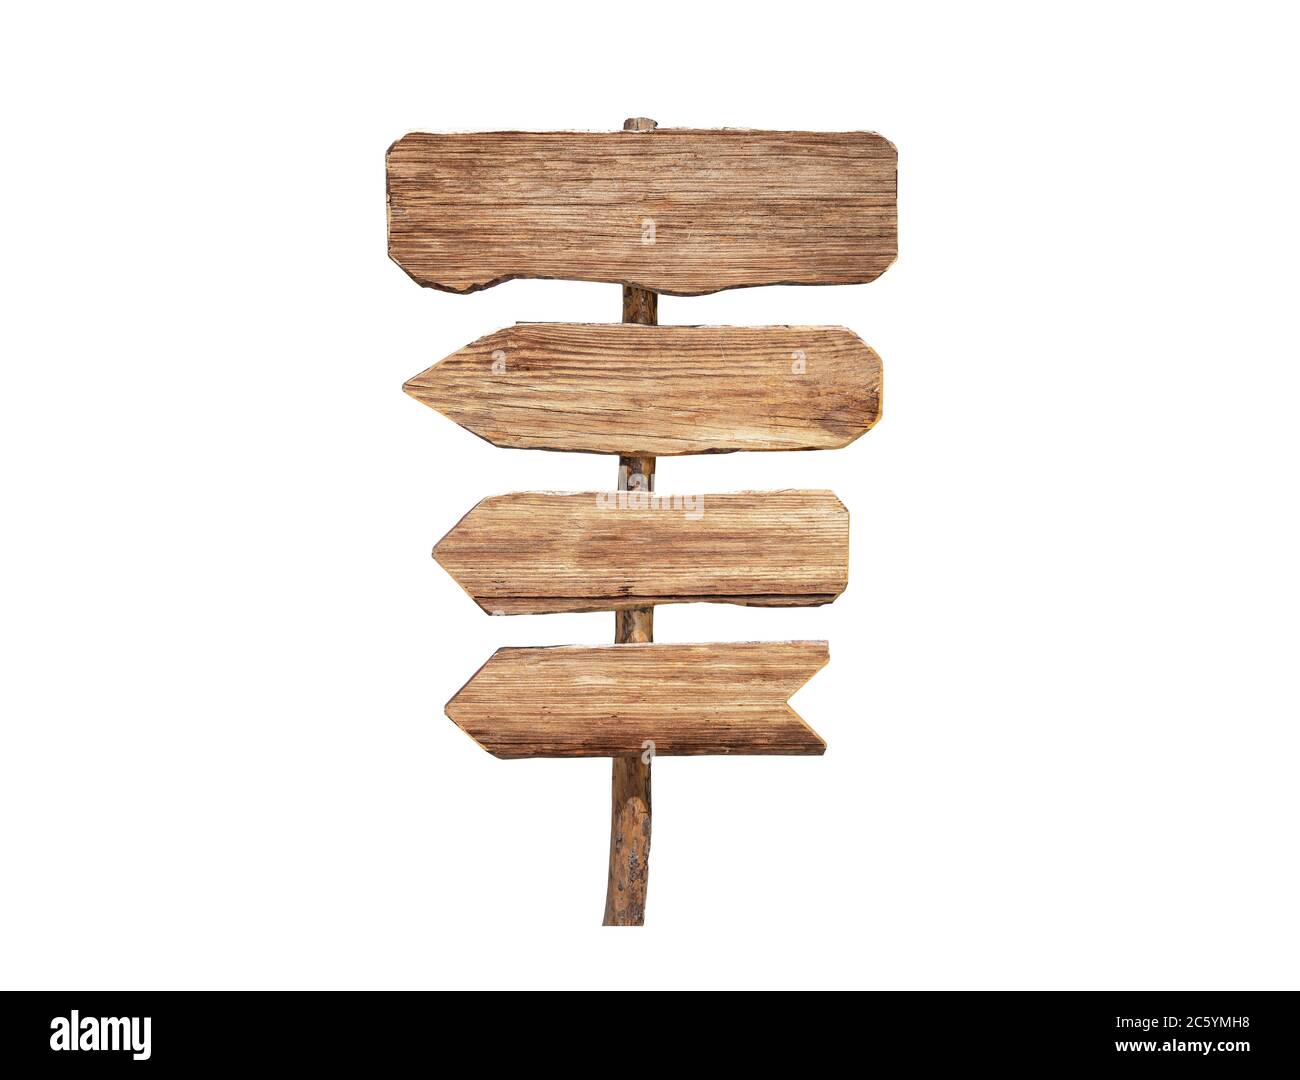 lavagna vuota da vecchio legno rustico su sfondo bianco per metamorfire varie scelte. Foto di alta qualità Foto Stock